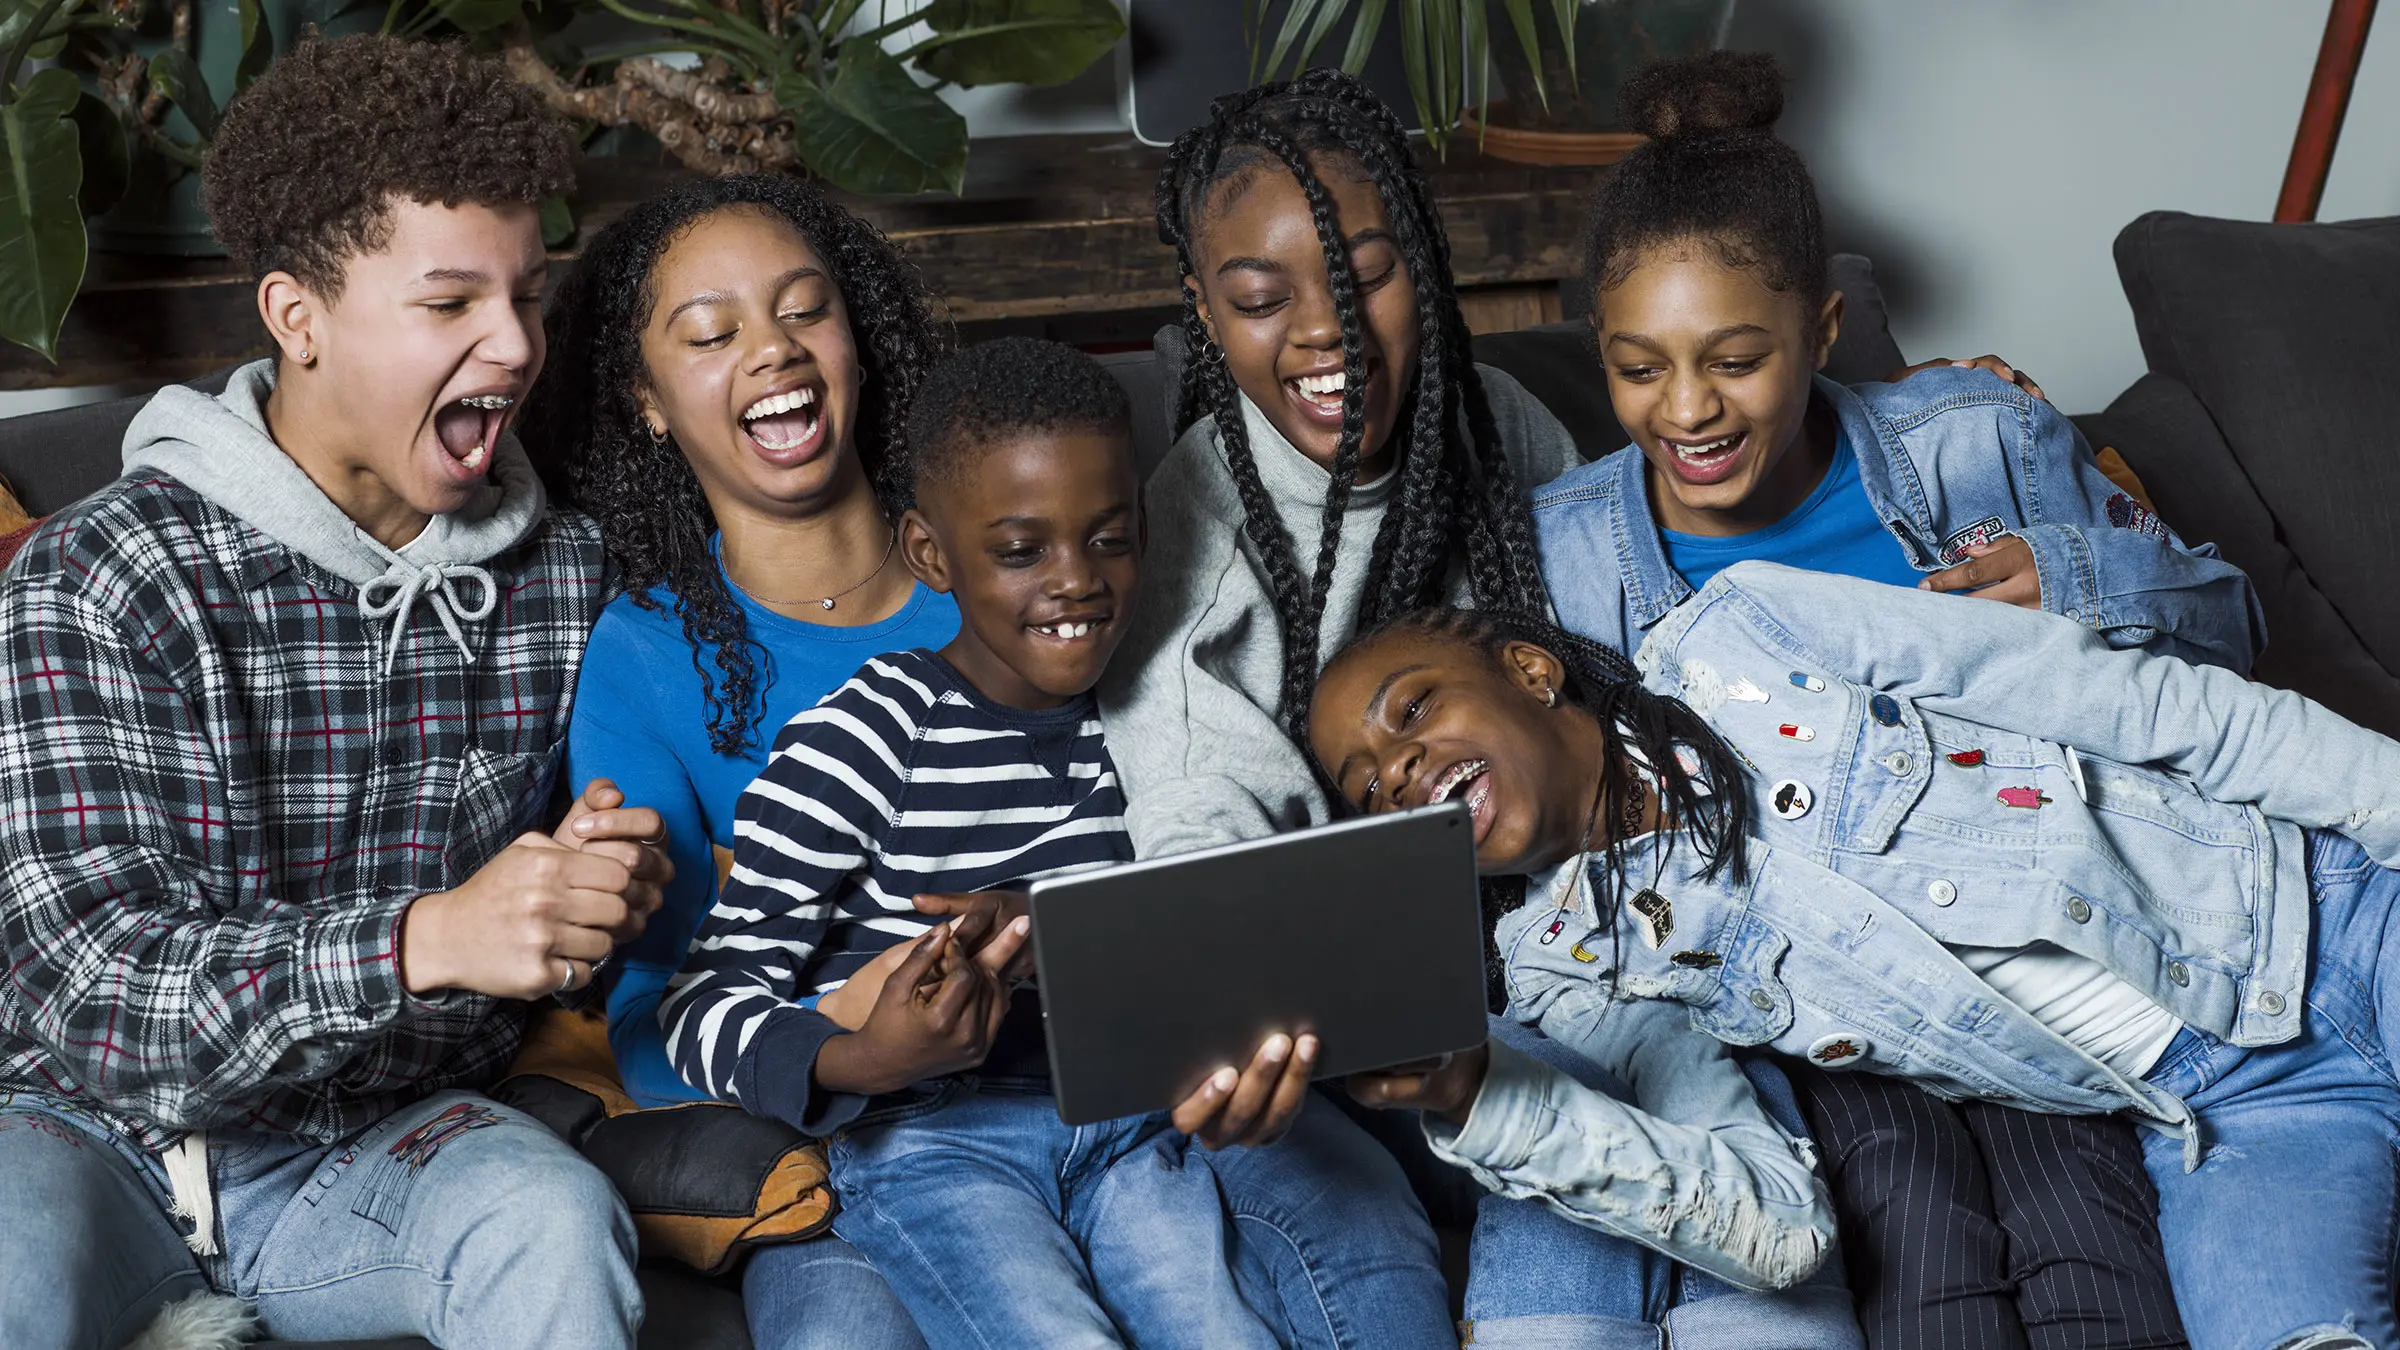 Een familie van 6 kinderen zitten samen lachend op de bank naar een tablet te kijken